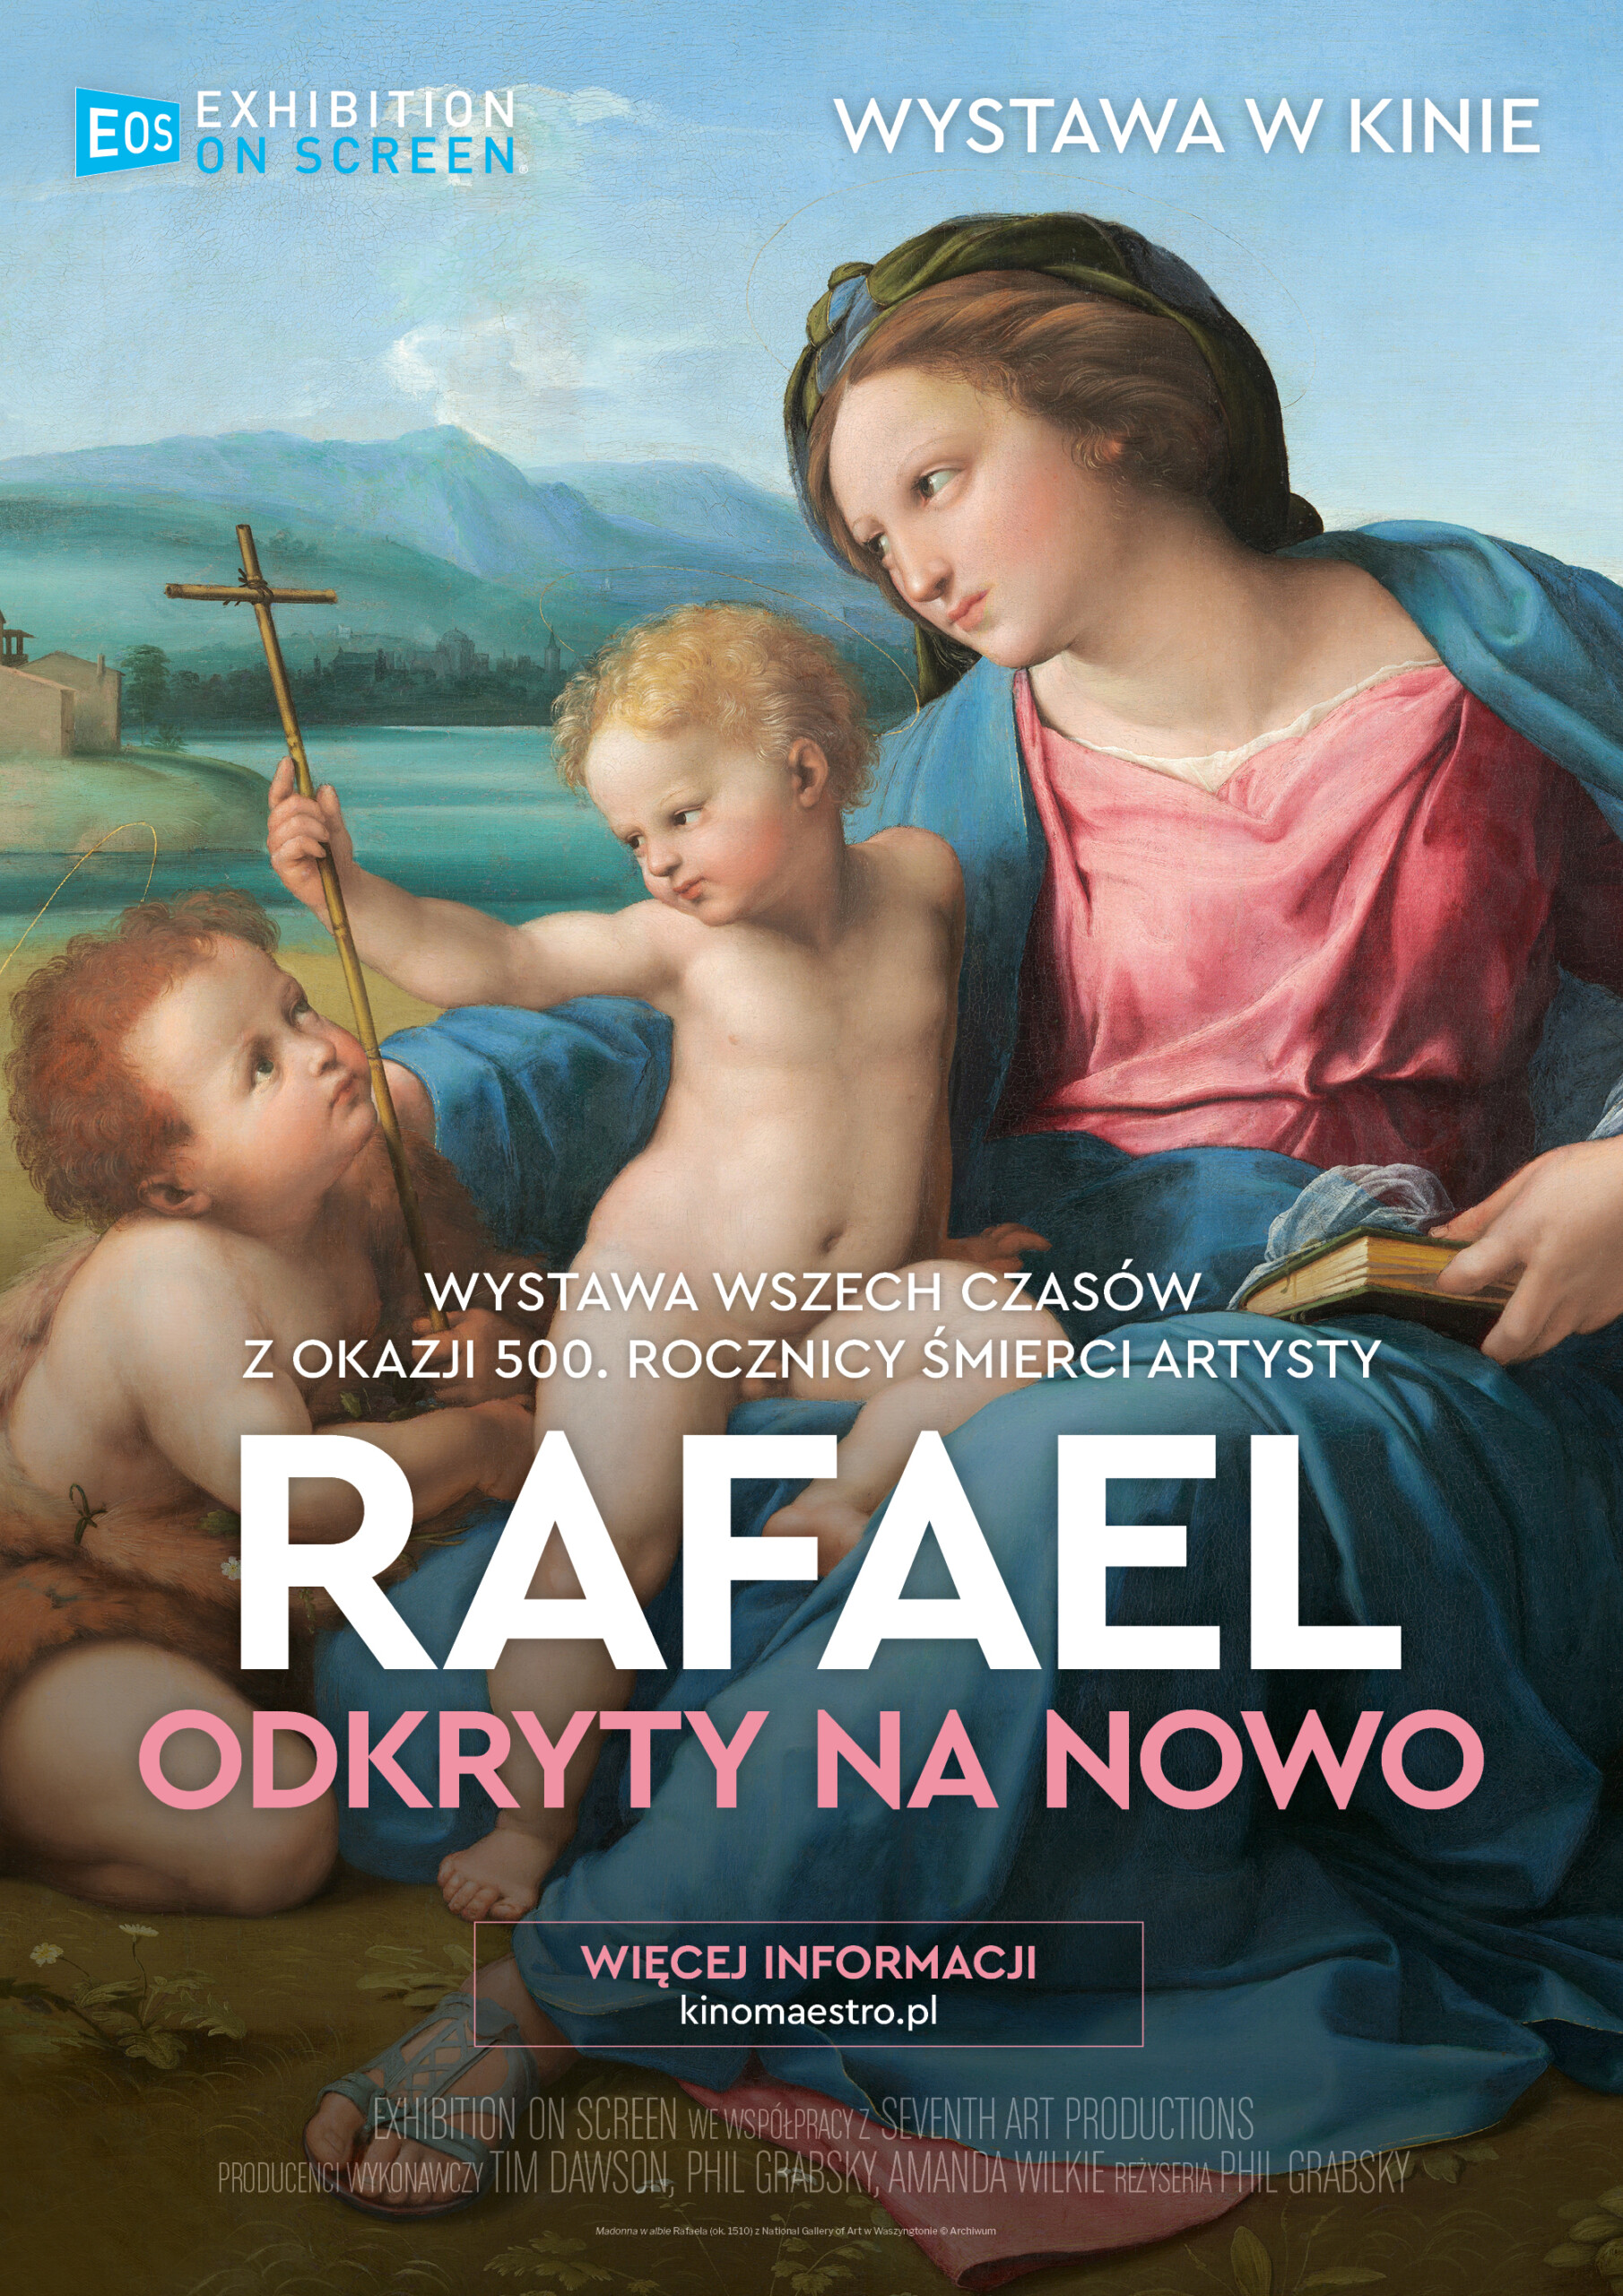 Rafael odkryty na nowo